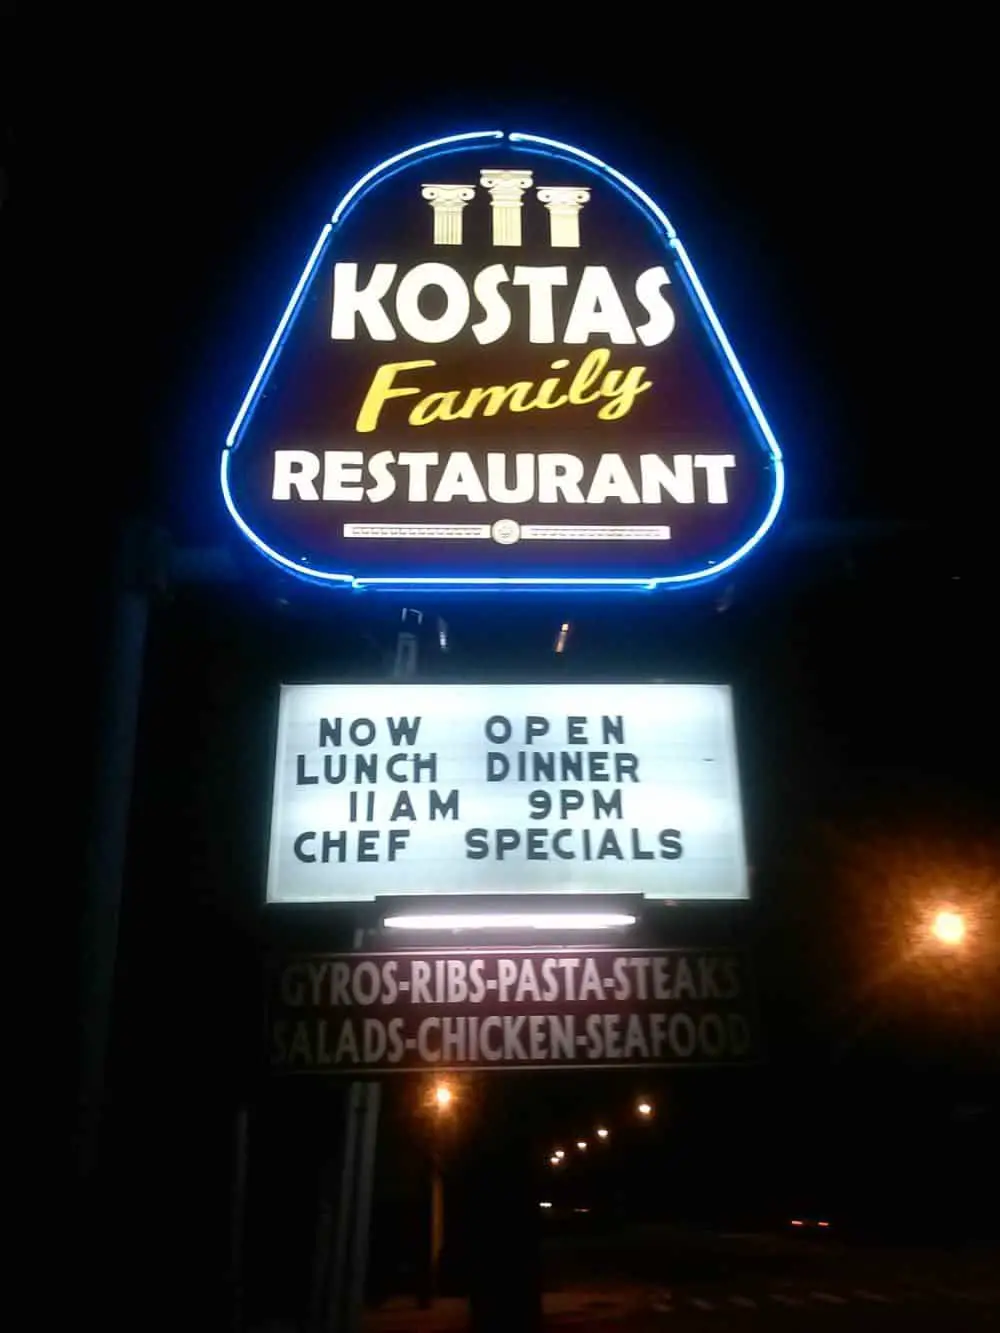 Kostas Family Restaurant in Palmetto Florida